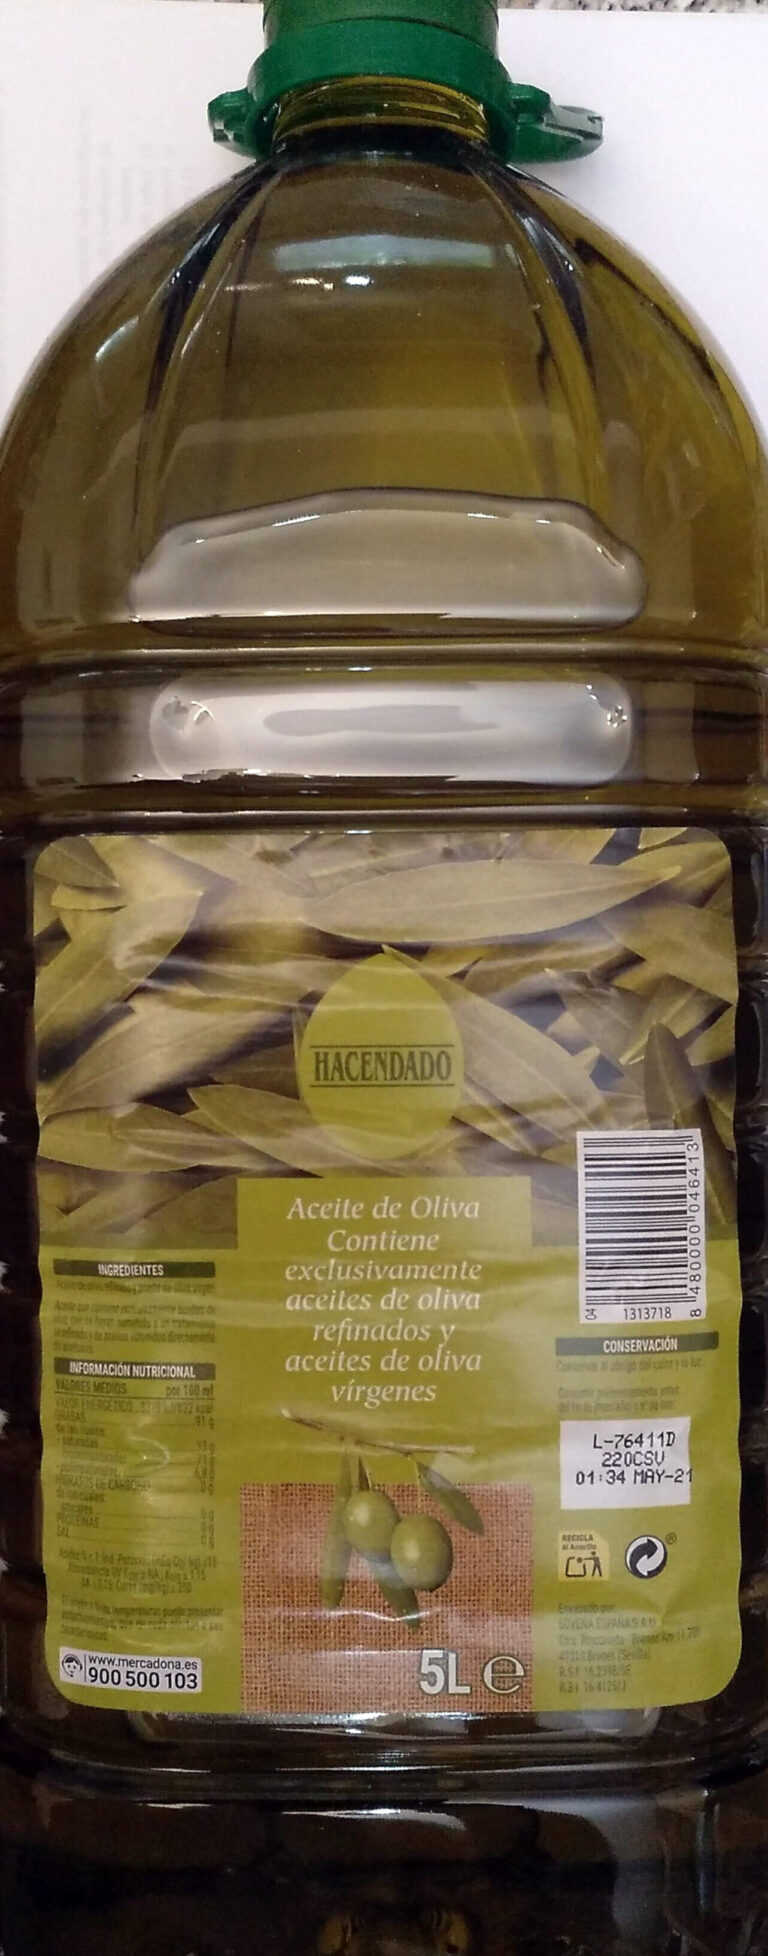 Todo sobre el aceite de oliva Mercadona 5L: calidad y precio al alcance de todos